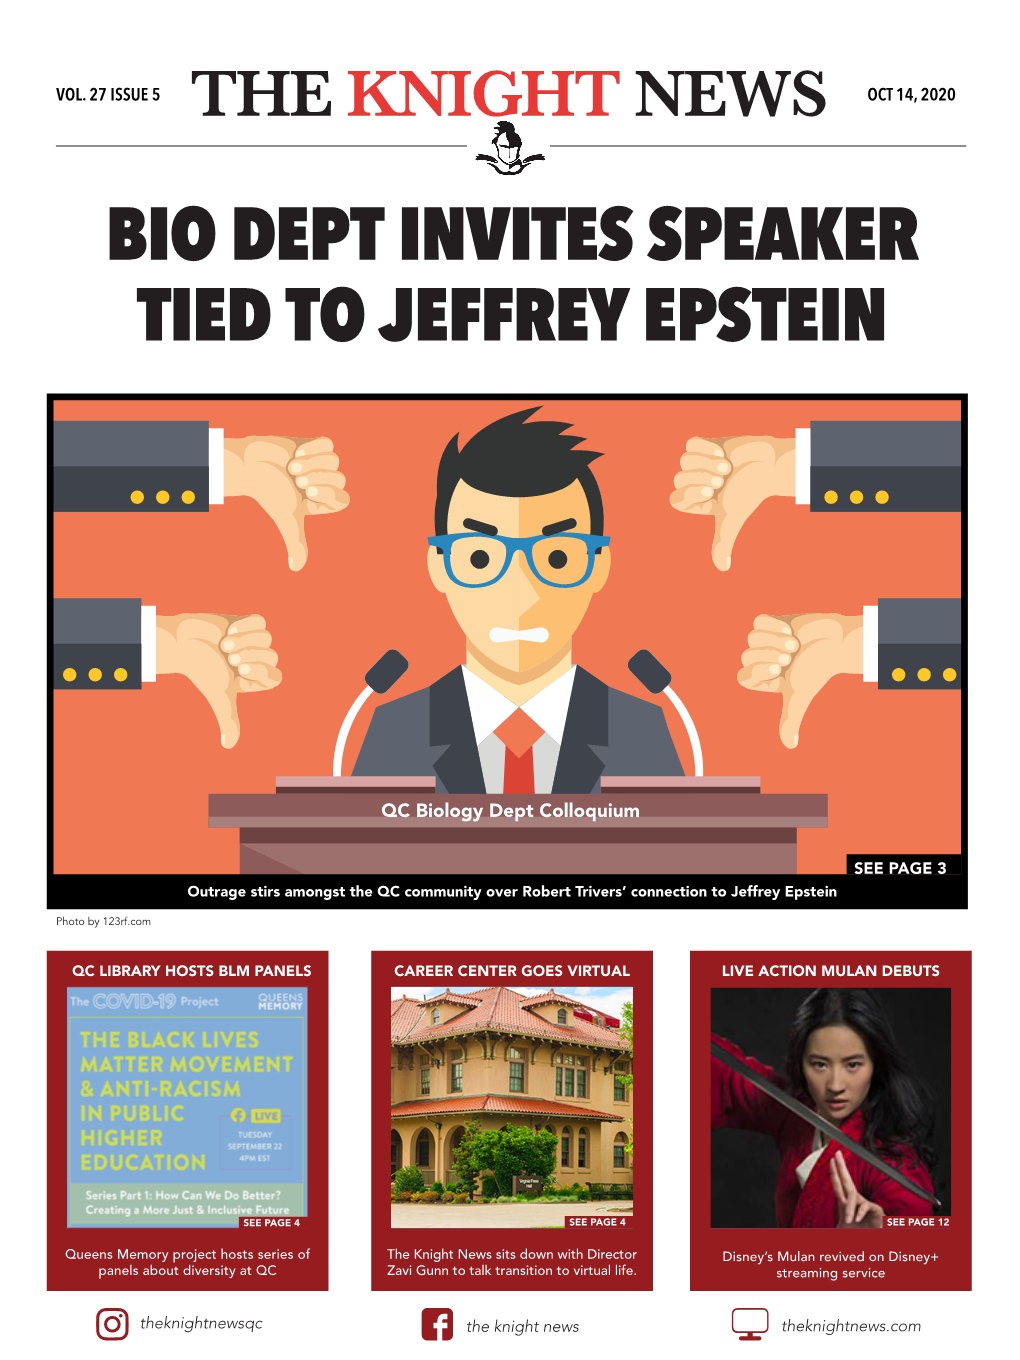 Bio Dept Invites Speaker Tied to Jeffrey Epstein